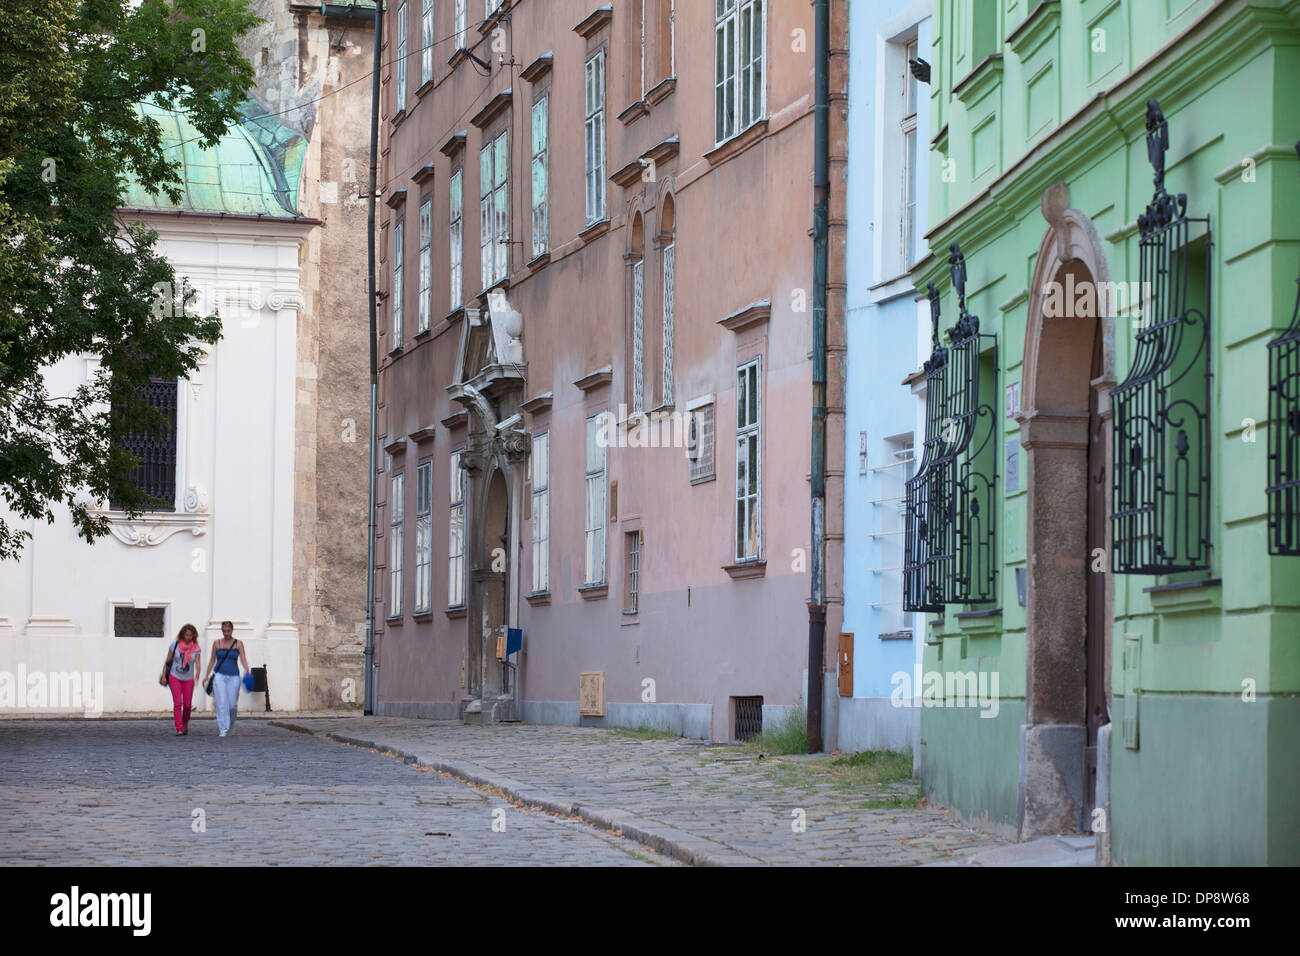 People walking along Kapitulska Street in Old Town, Bratislava, Slovakia Stock Photo